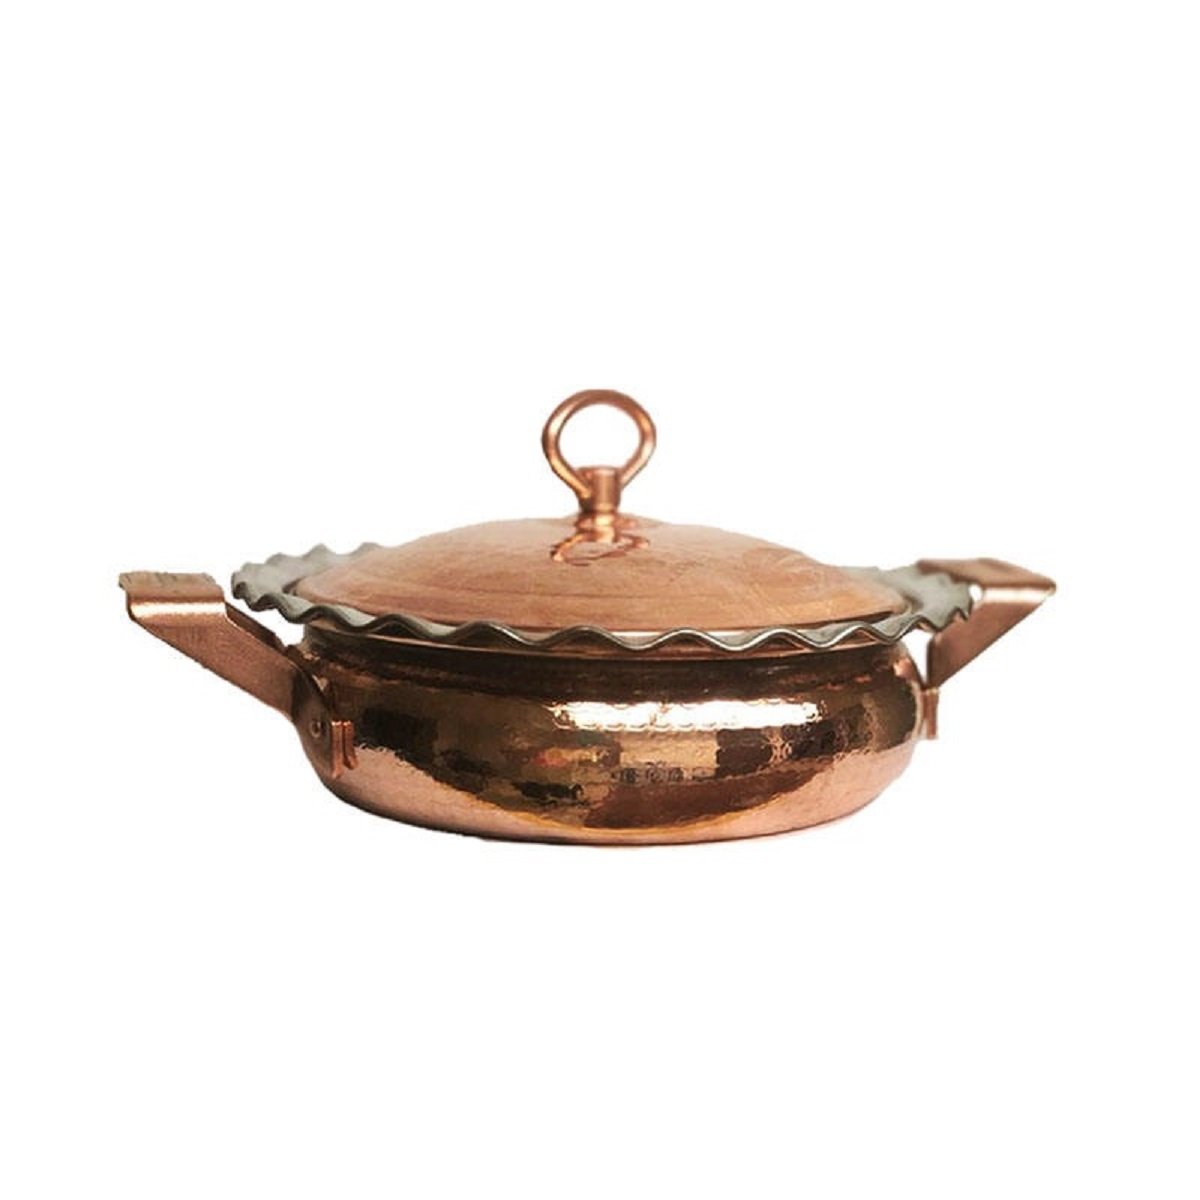 Handicraft Copper pan Code 86,buy copper handicrafts,buy copper goods